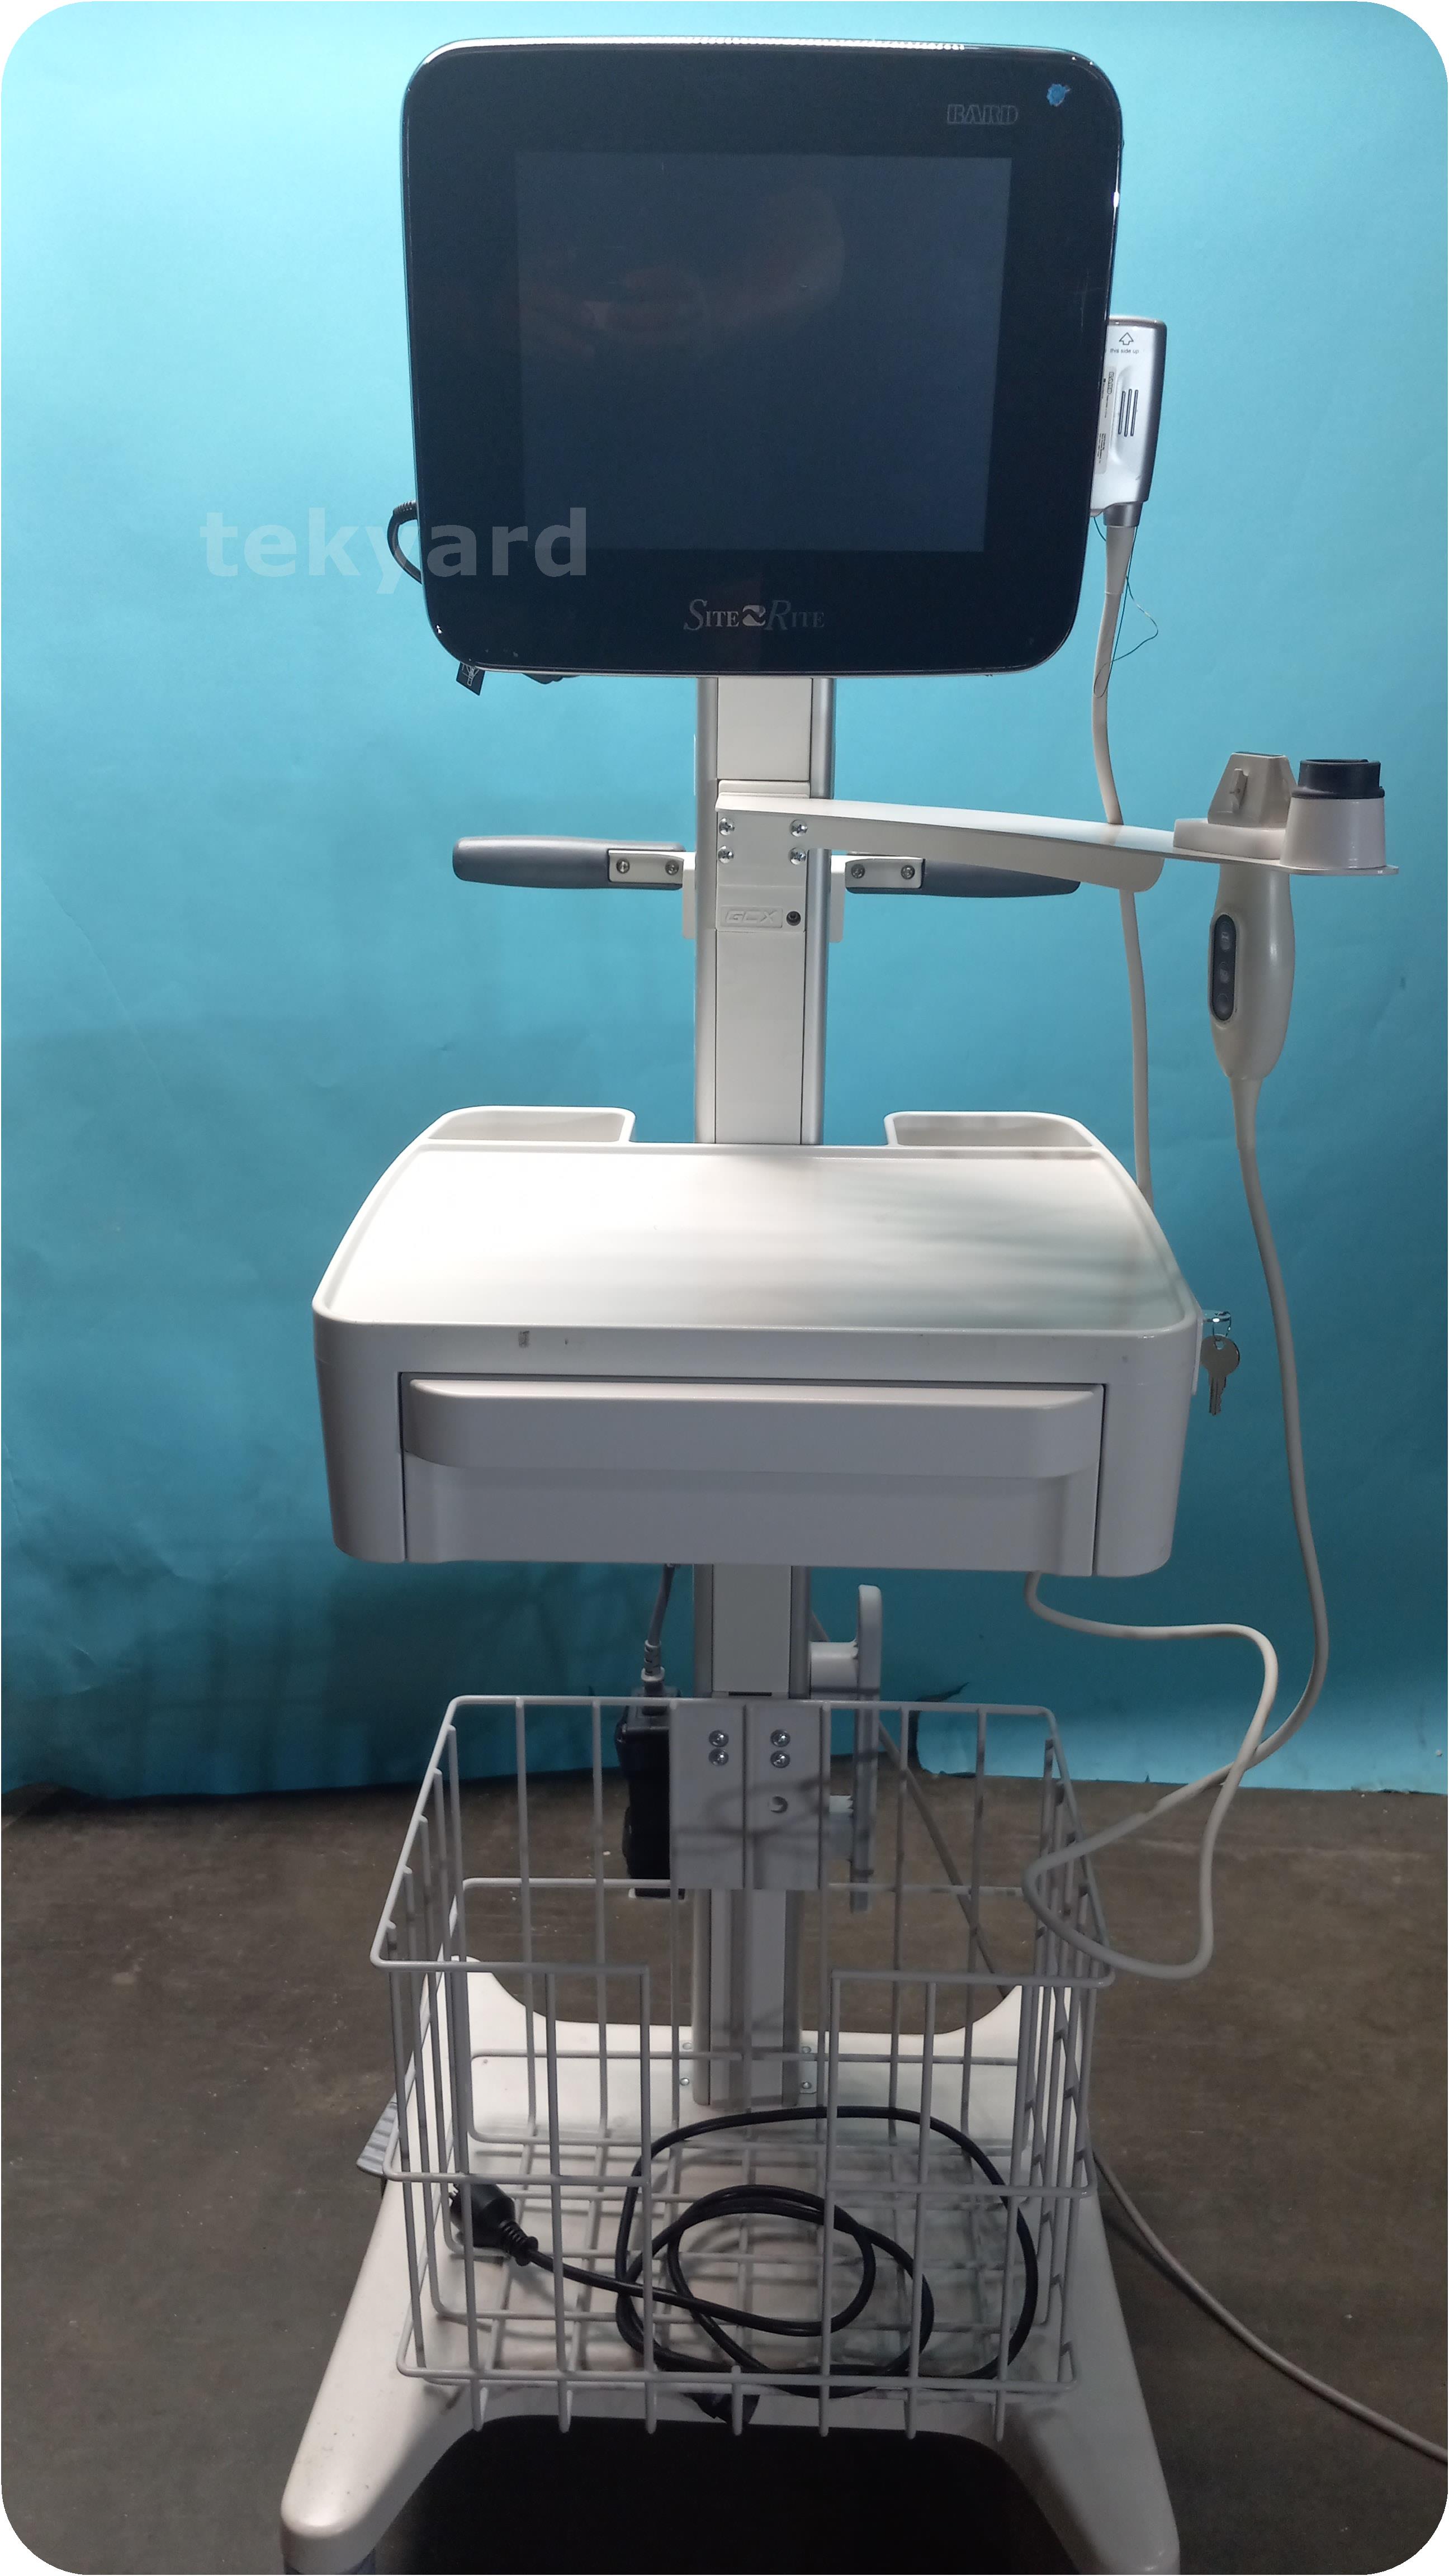 tekyard, LLC. - 326857-Bard Site-Rite Halcyon Ultrasound Diagnostic System